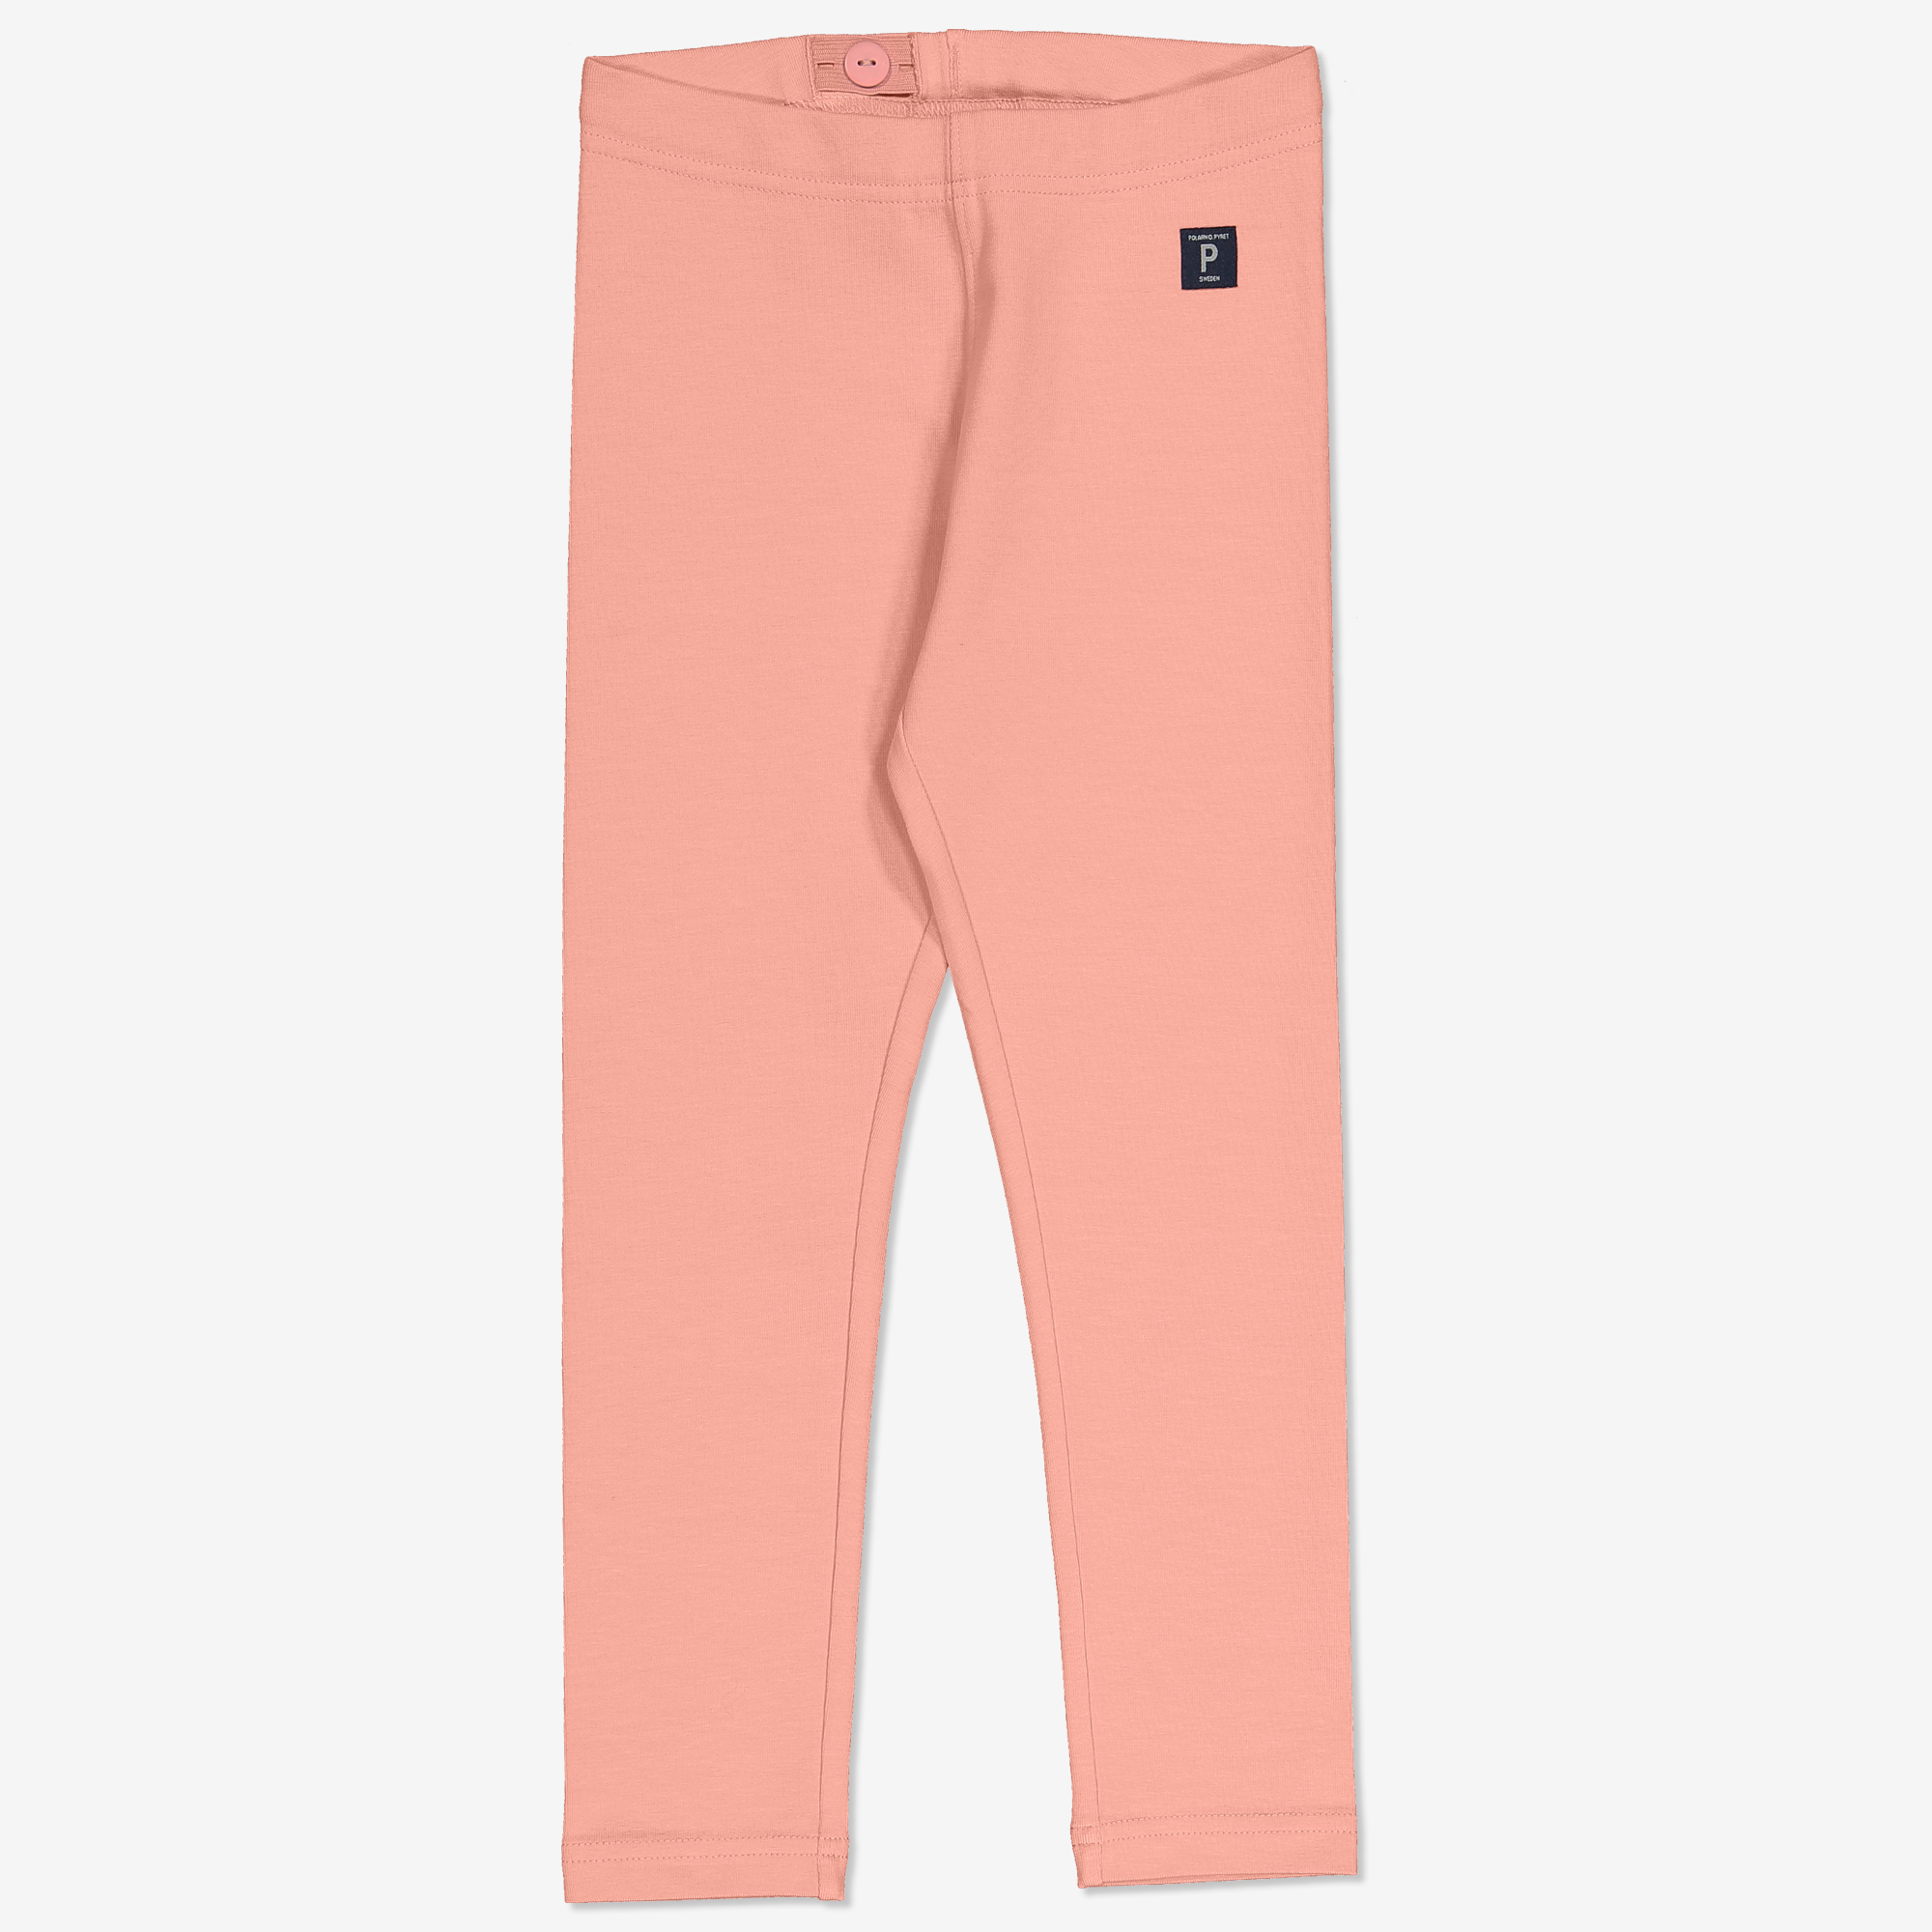 Polarn O. Pyret Enfärgade leggings rosa